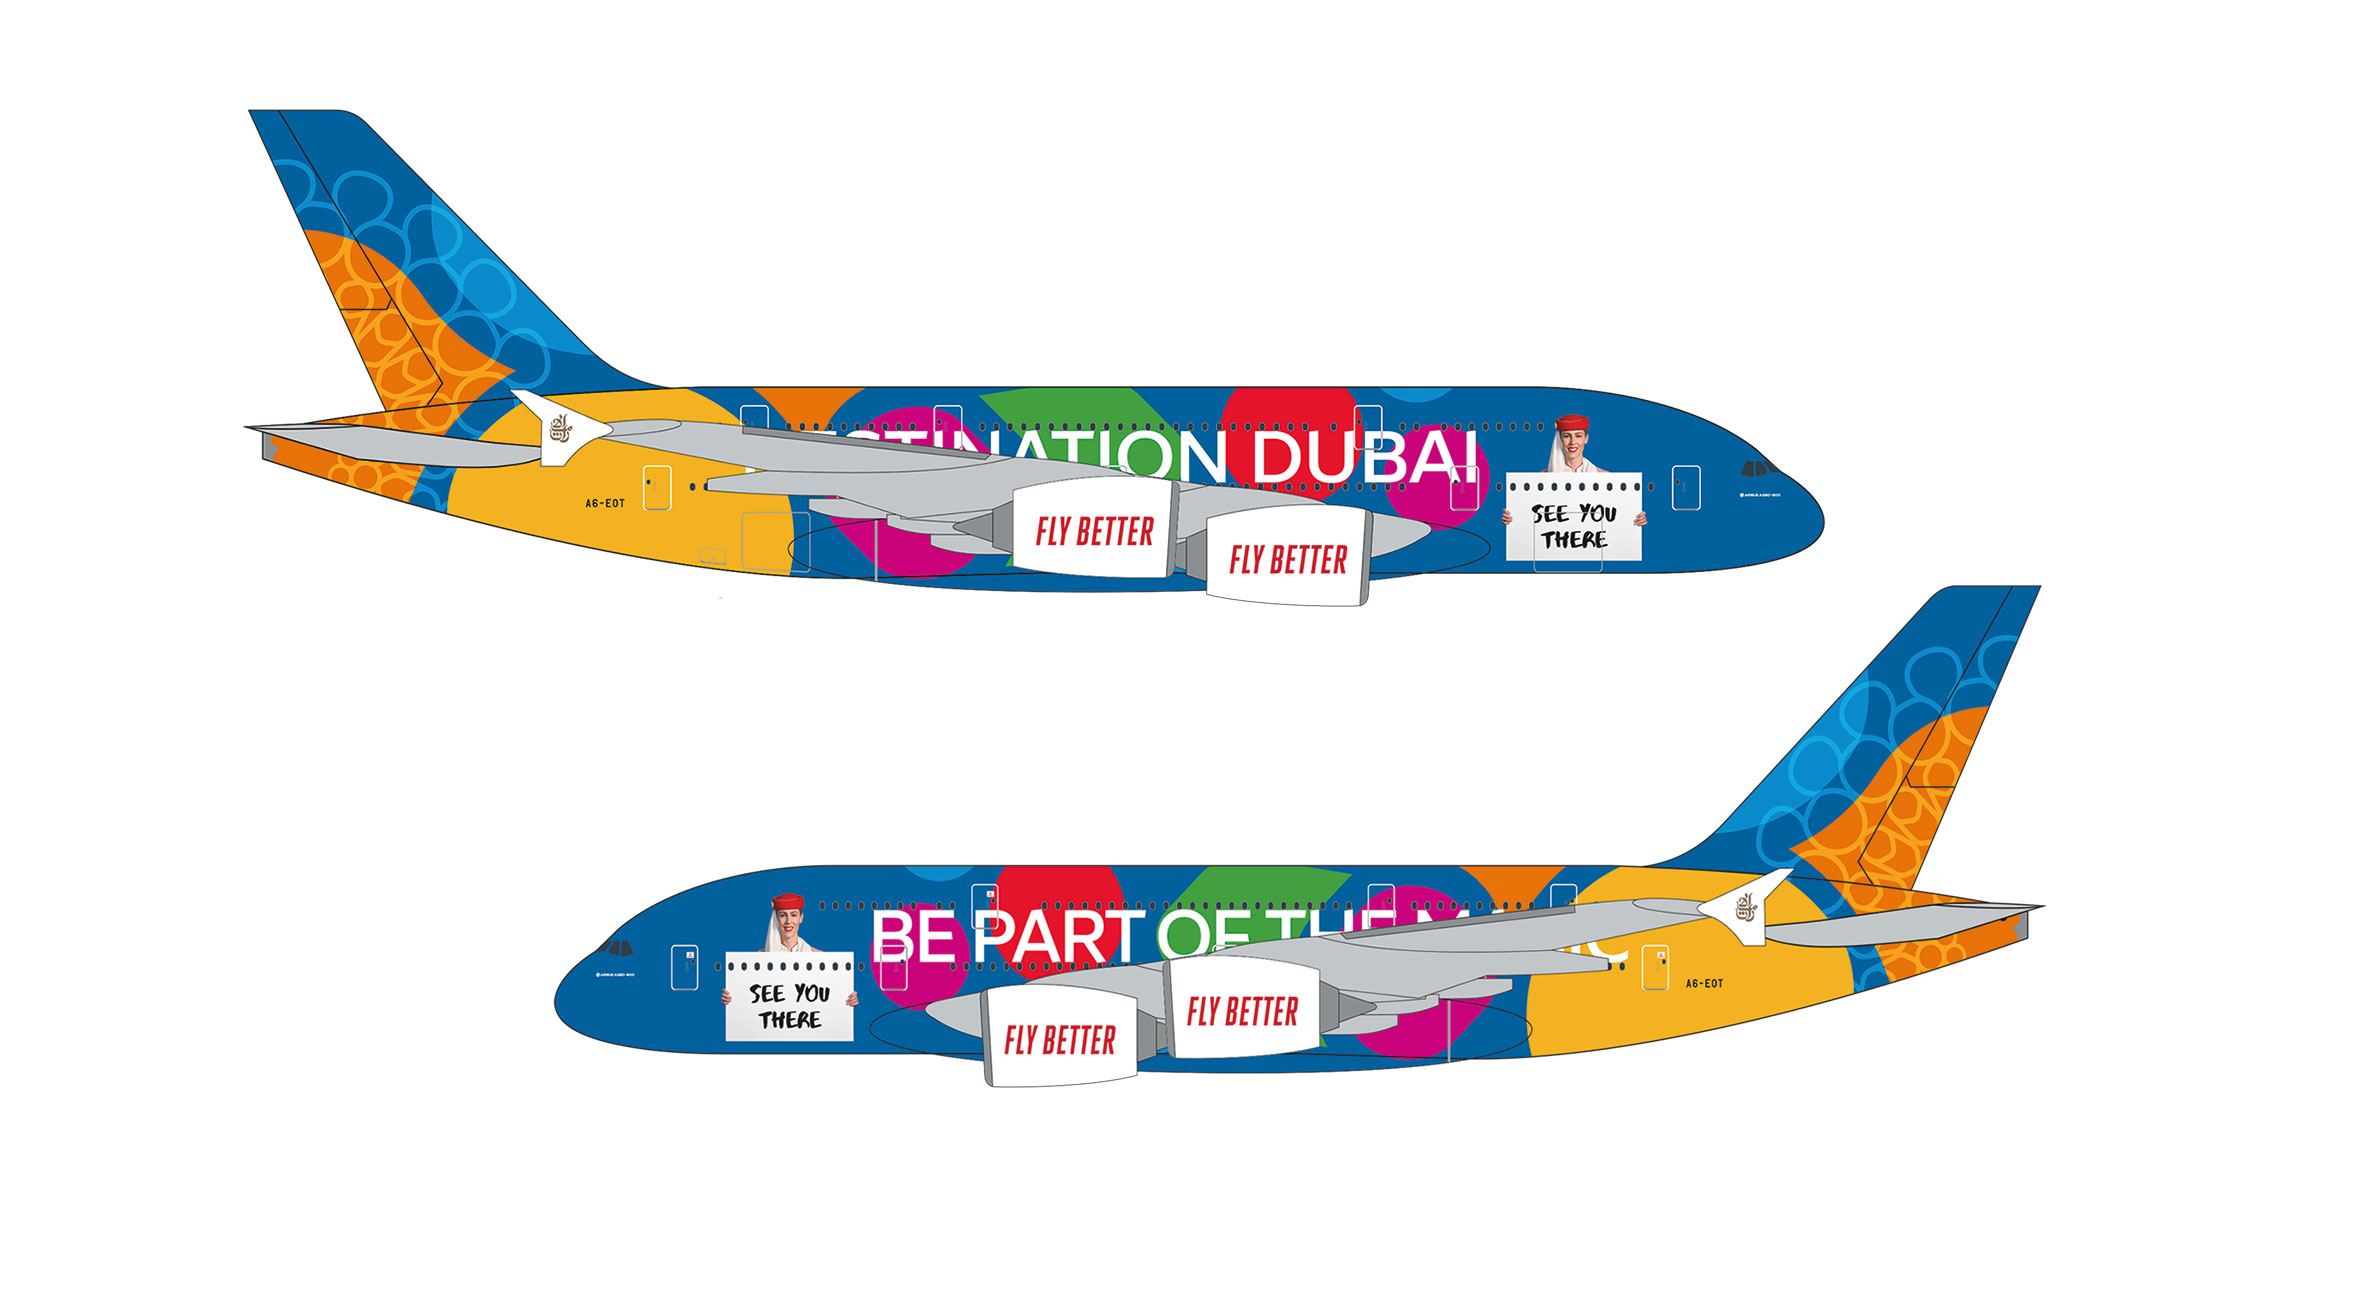 Snap-Fit Emirates A380 Destination Dubai